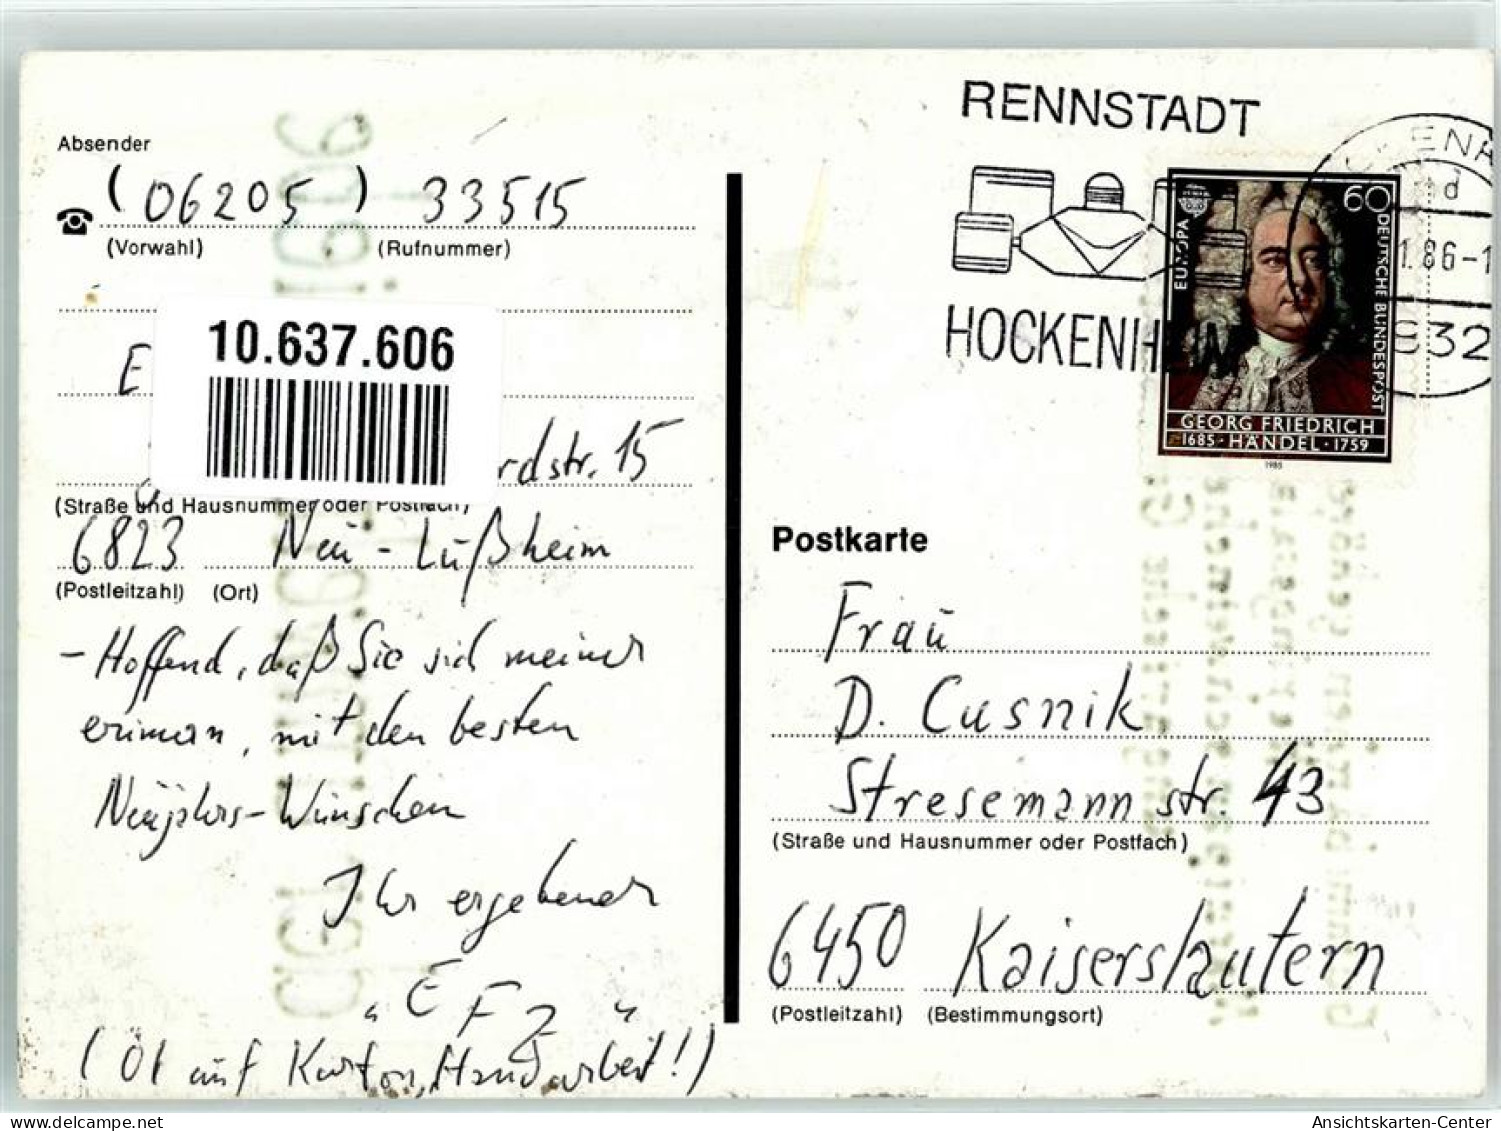 10637606 - Handgemalt Gummibaerchen Herzen Umwelt Sign EFZ - Varkens